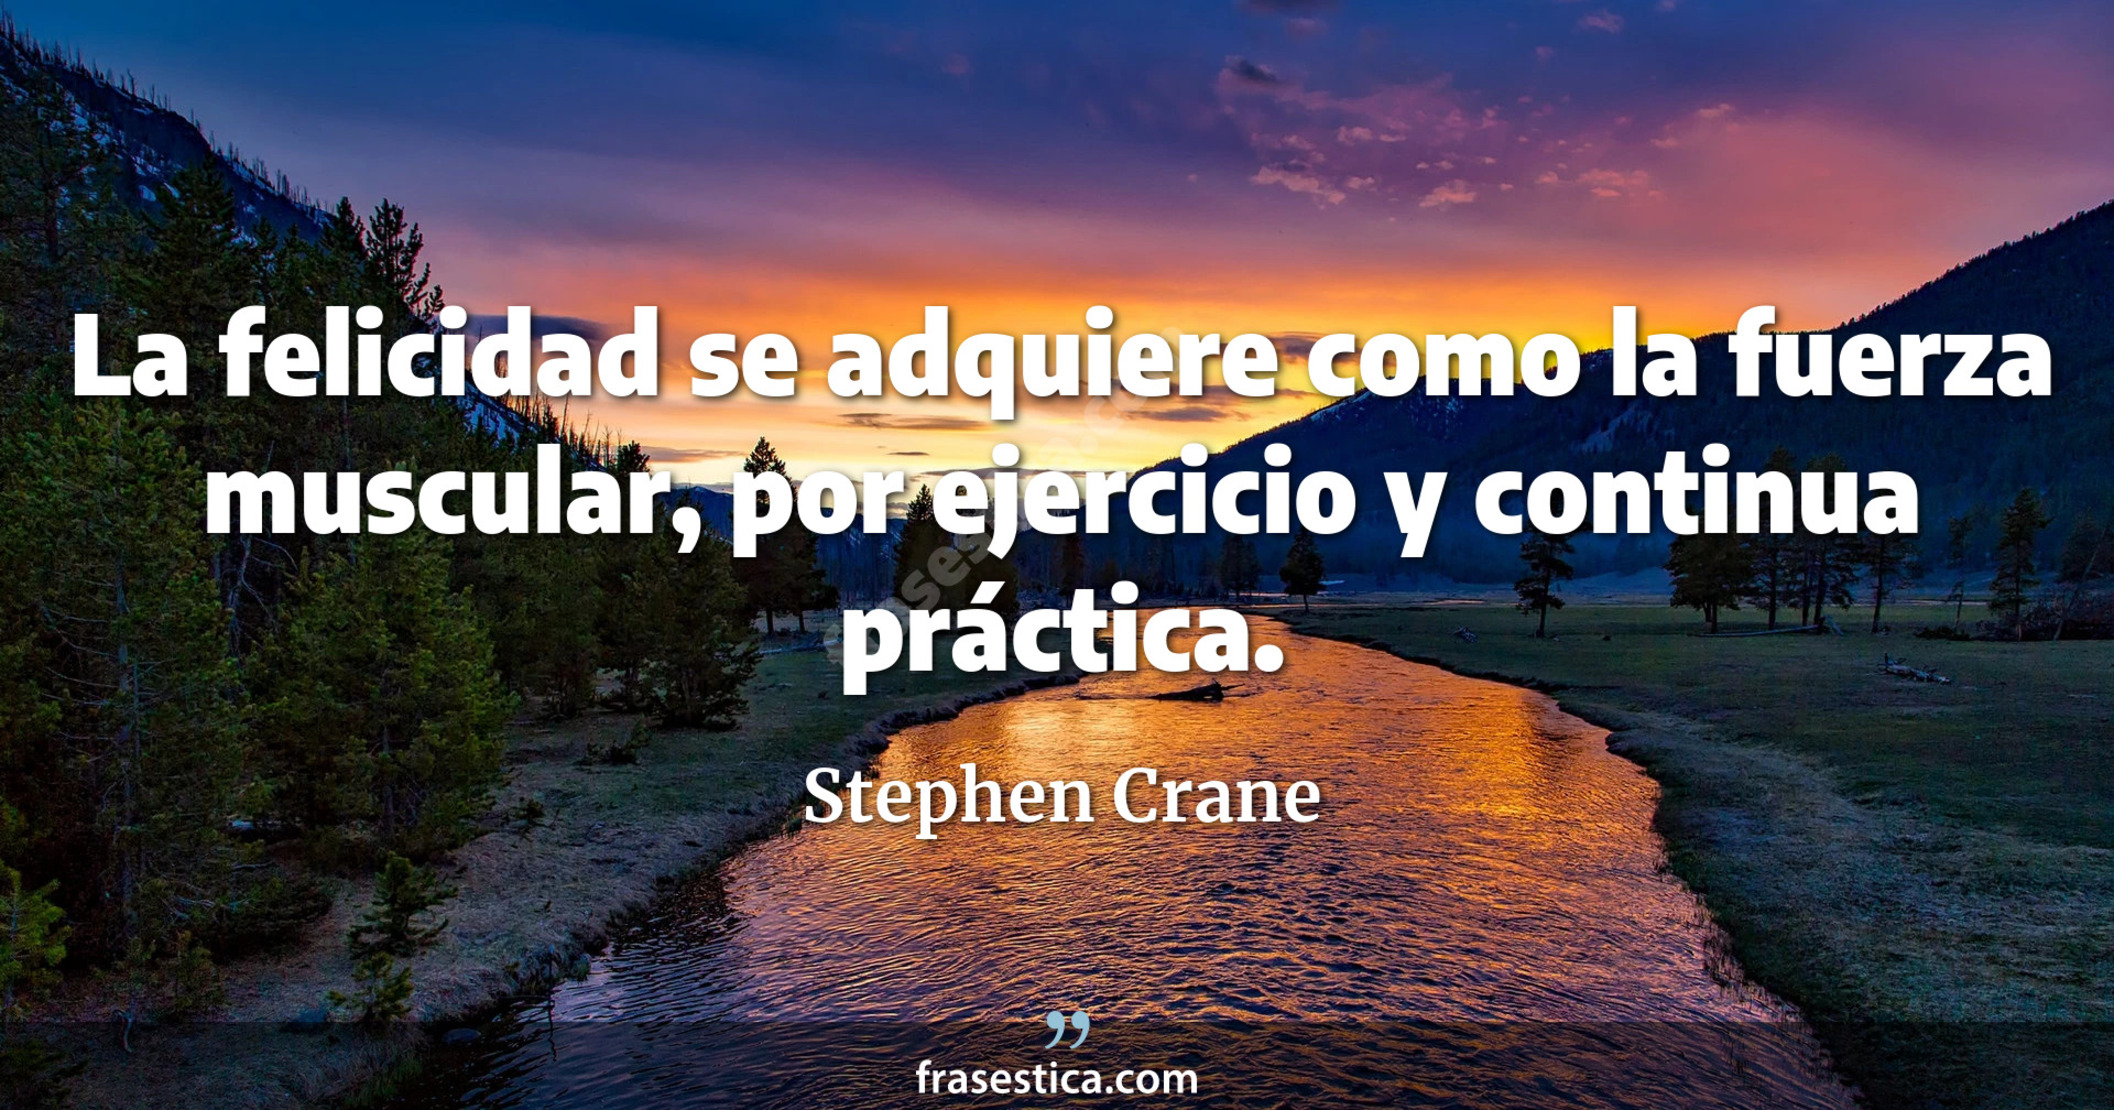 La felicidad se adquiere como la fuerza muscular, por ejercicio y continua práctica. - Stephen Crane